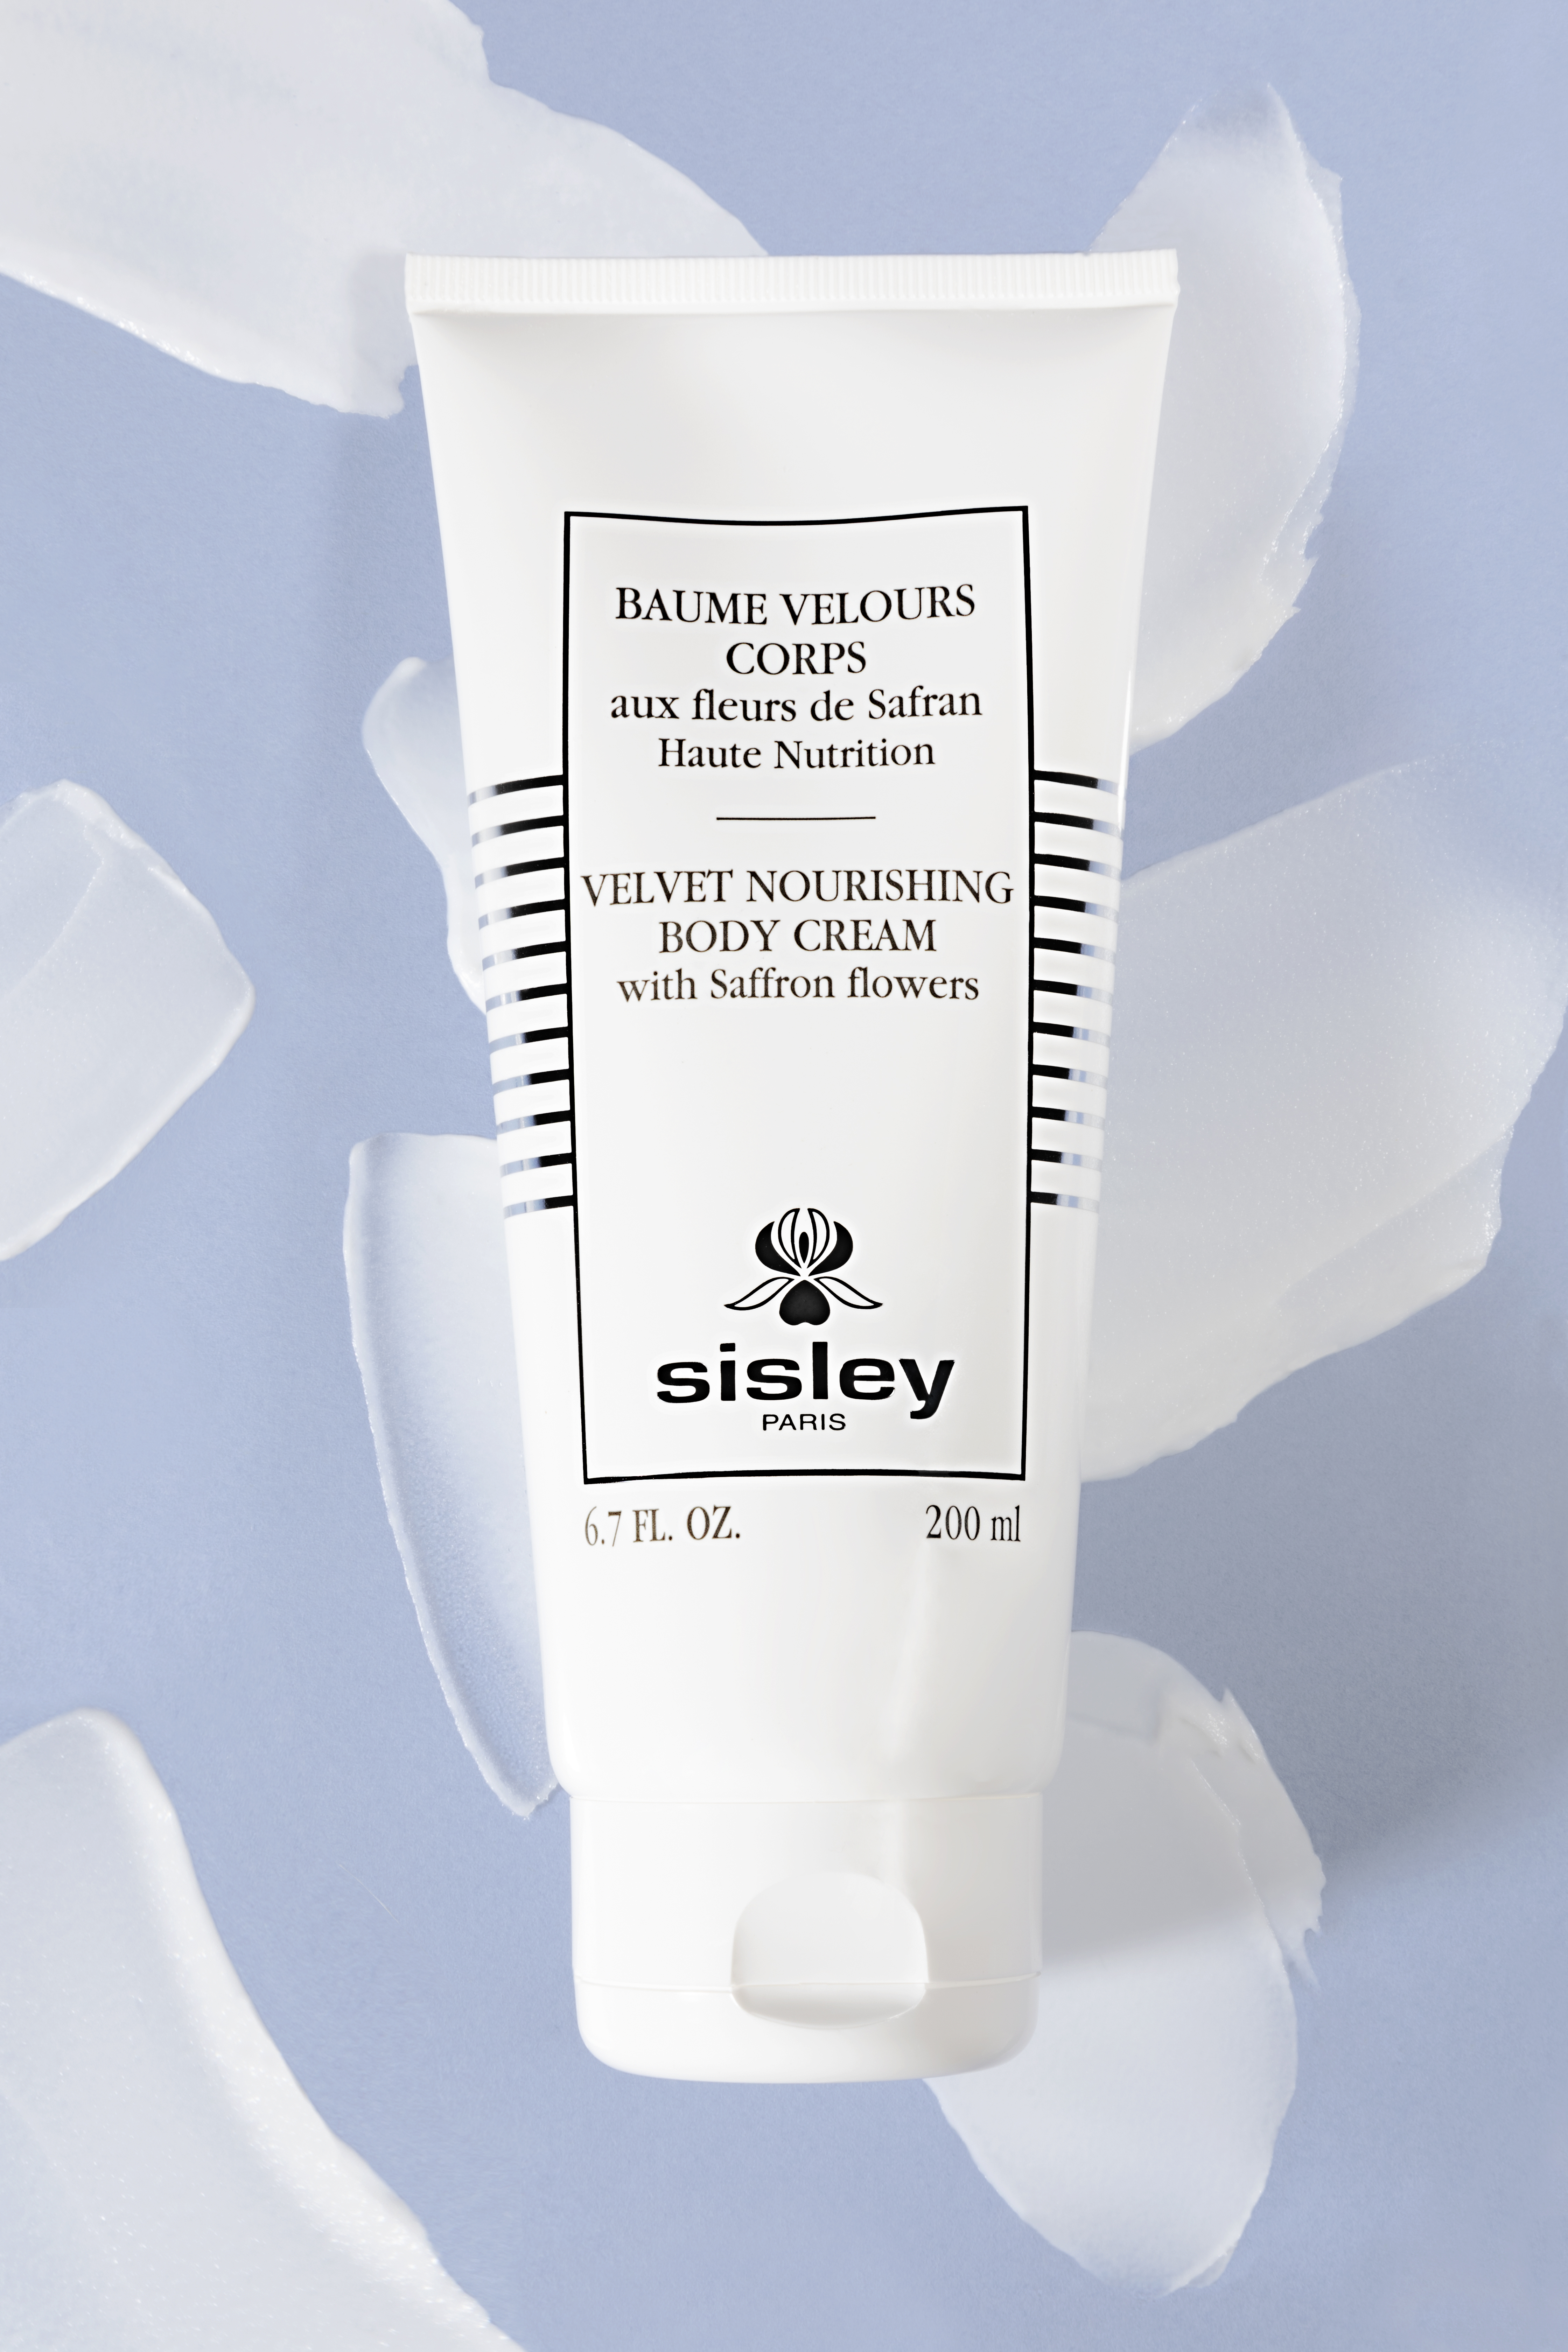 Sisley's Velvet Nourishing Body Cream